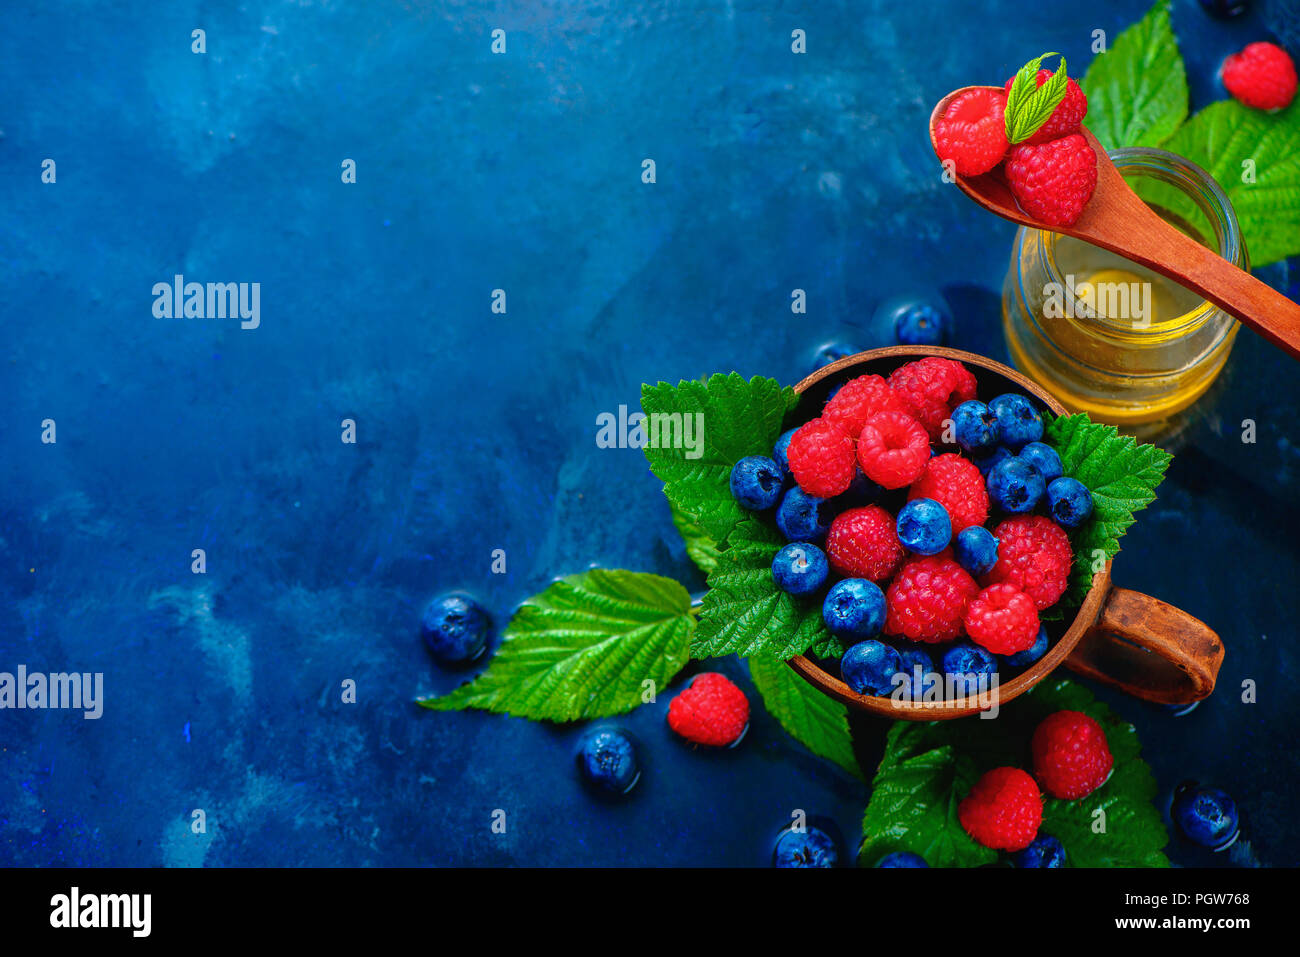 Himbeeren und Blaubeeren in einem keramiktasse mit grünen Blättern und ein Glas Honig. Sommer berry Ernte Konzept auf einem dunkelblauen nass Hintergrund mit kopieren. Ansicht von oben Essen Fotografie Stockfoto